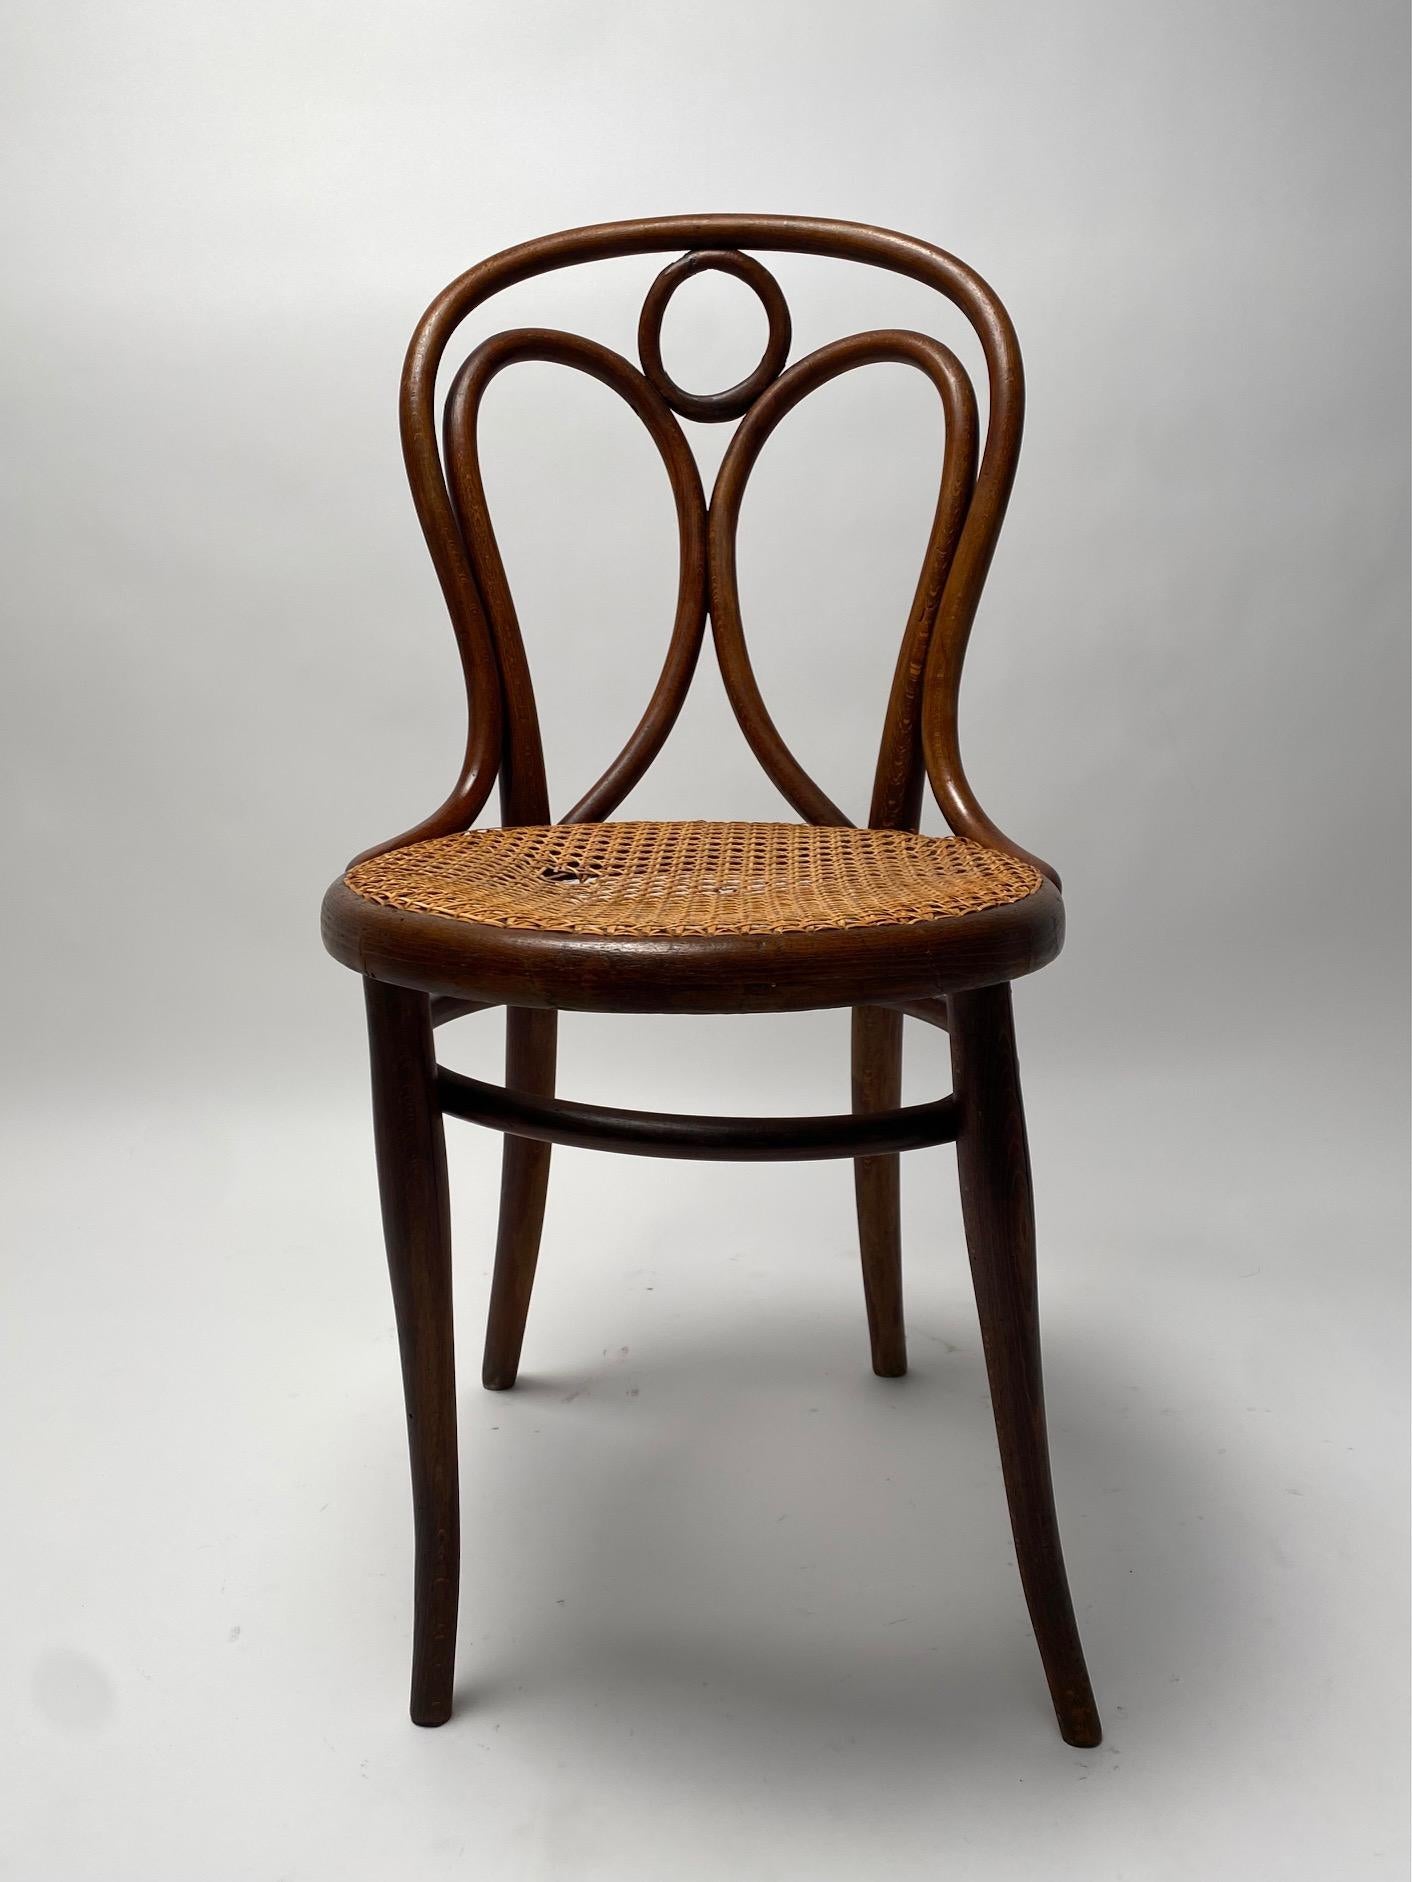 Ensemble de 4 chaises en hêtre courbé Thonet, Autriche, début des années 1900

Il s'agit d'un modèle de chaises classique mais très élégant, réalisé selon la célèbre technique de cintrage du hêtre à la vapeur d'eau. Une icône de style et de modernité